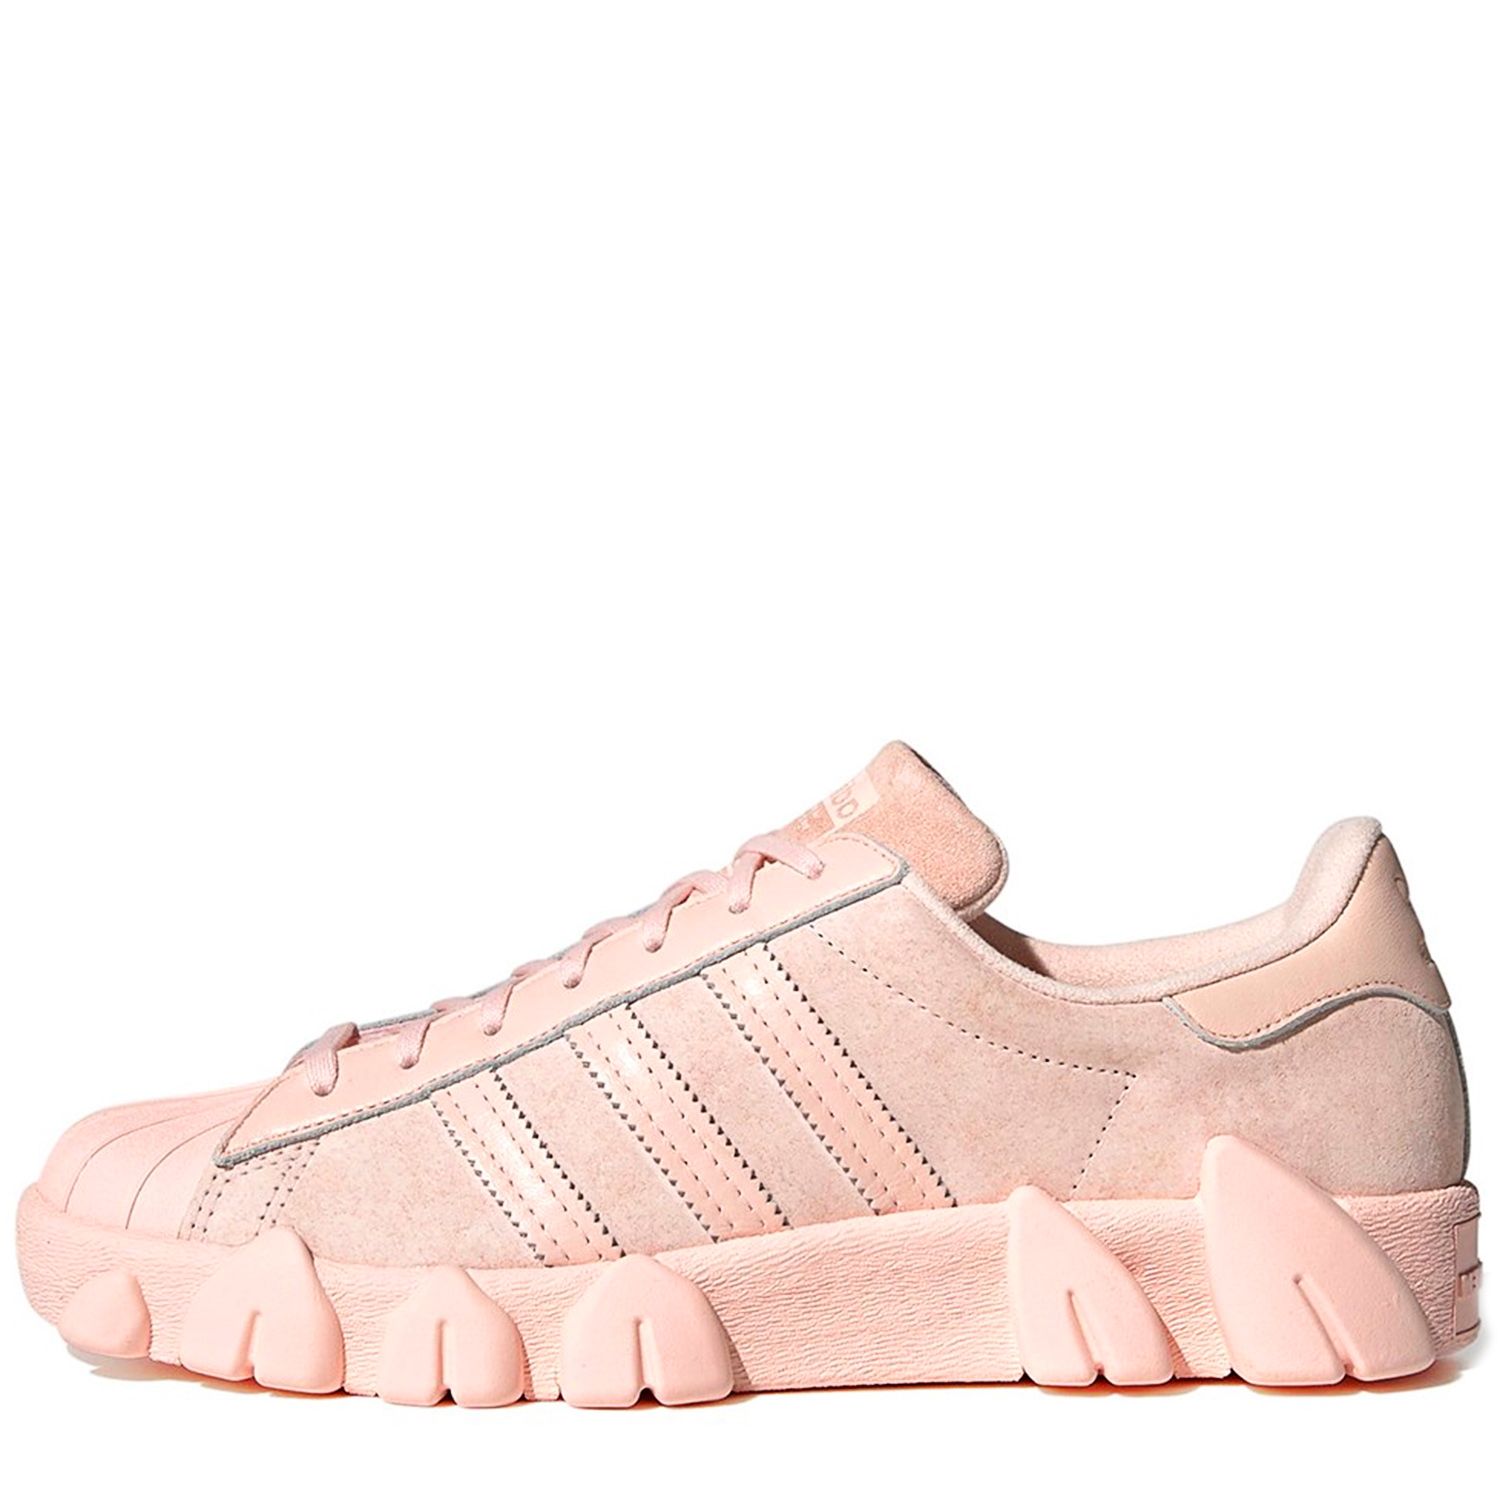 adidas Originals X ANGEL CHEN Superstar 80'S AC  Icey Pink / Cloud White